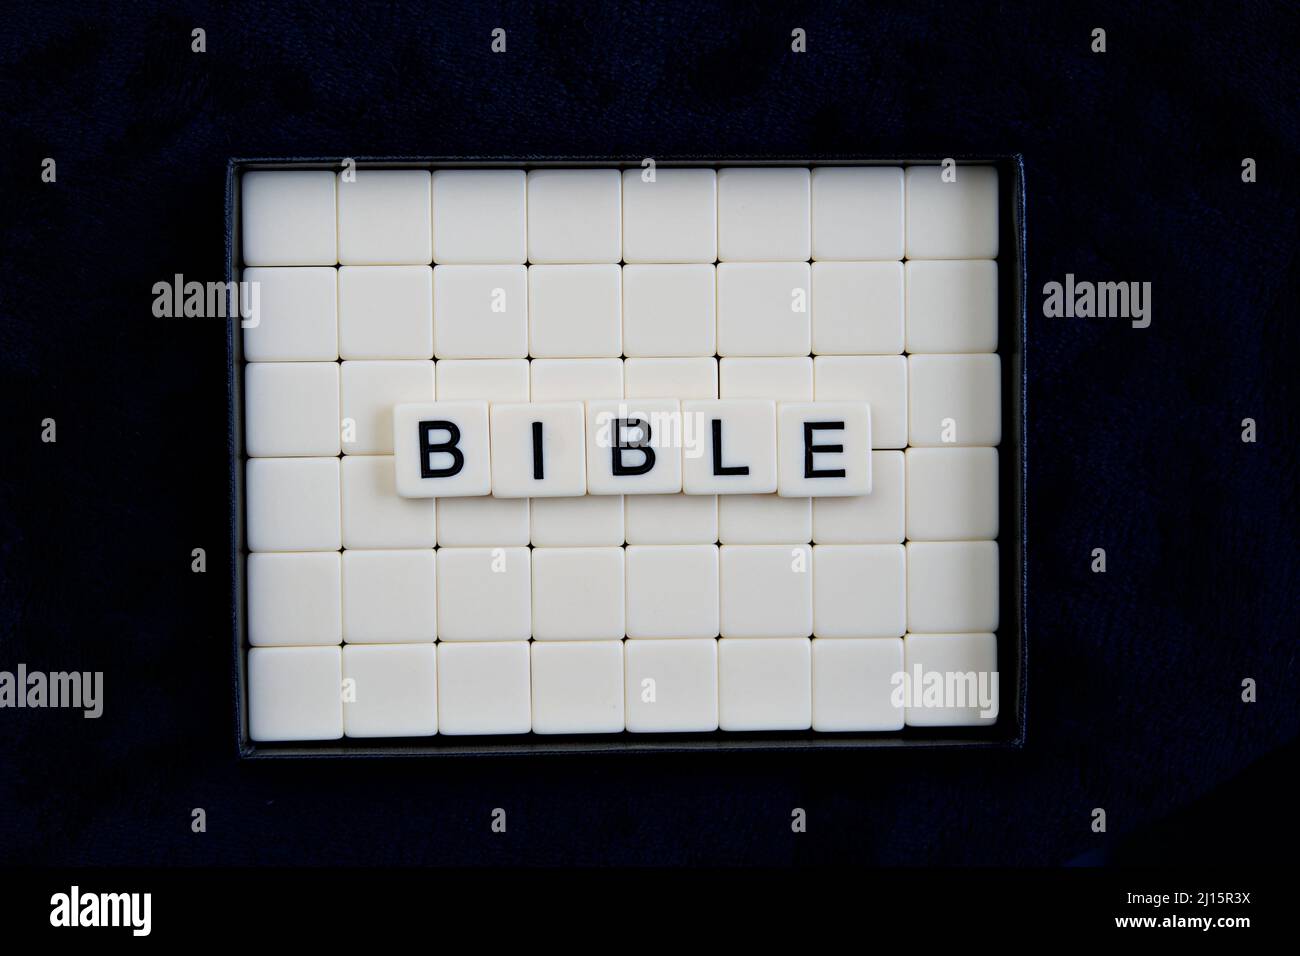 Bible : mots composés de combinaisons de lettres Banque D'Images